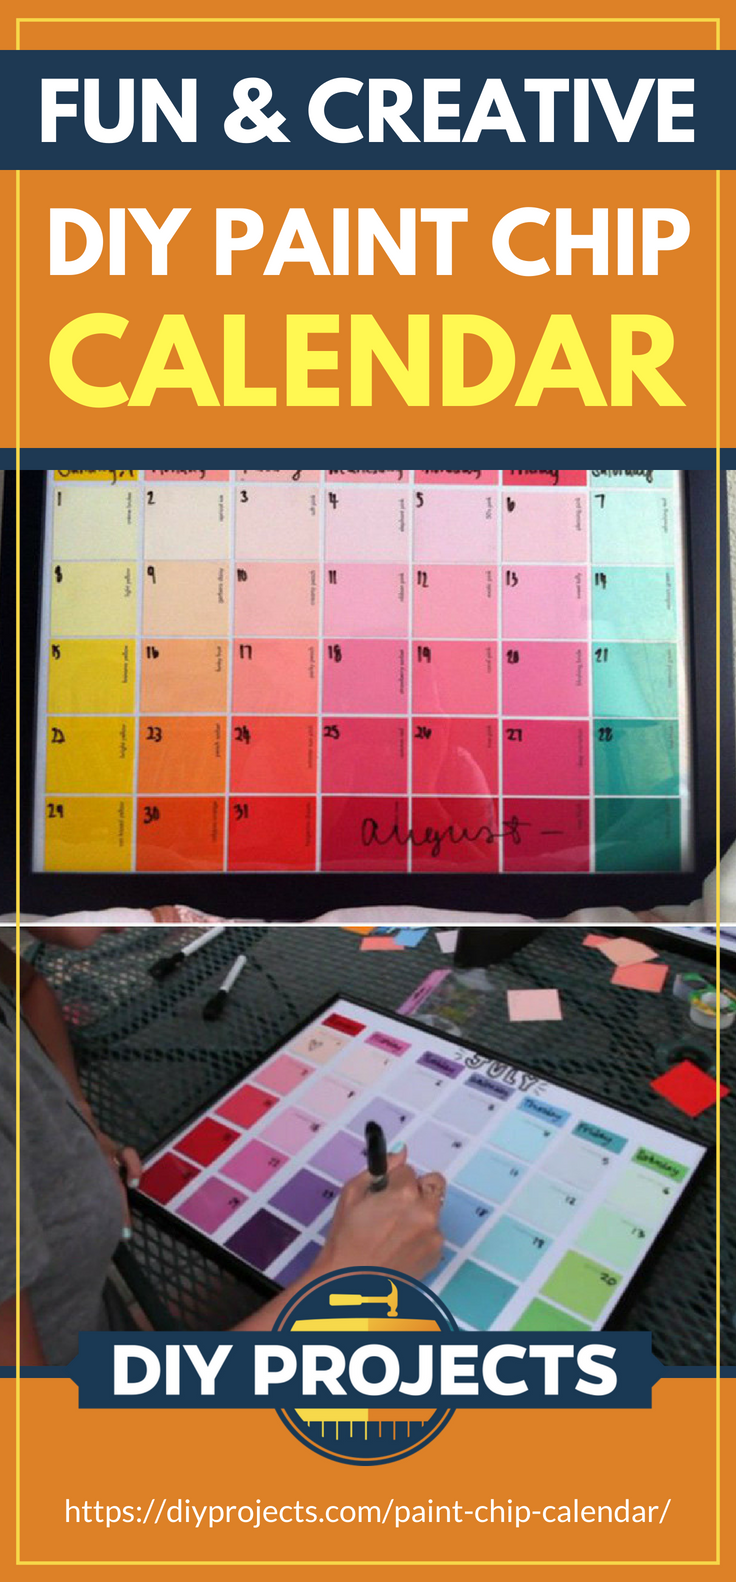 Fun & Creative DIY Paint Chip Calendar | https://diyprojects.com/paint-chip-calendar/